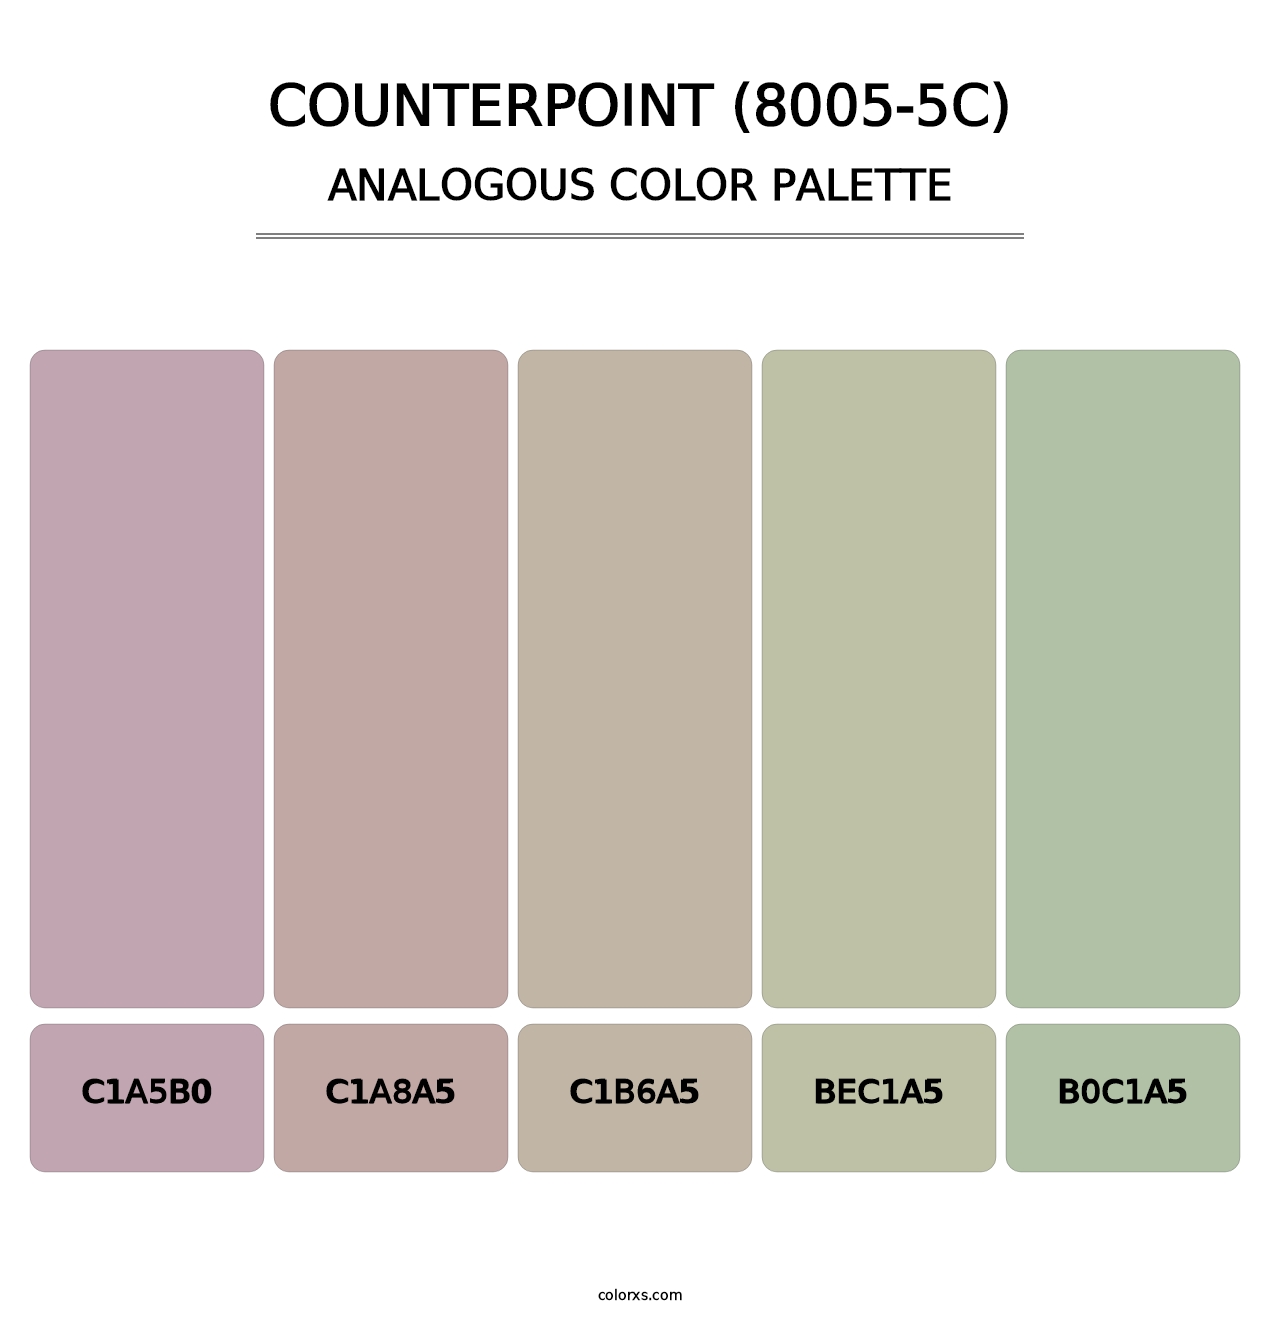 Counterpoint (8005-5C) - Analogous Color Palette